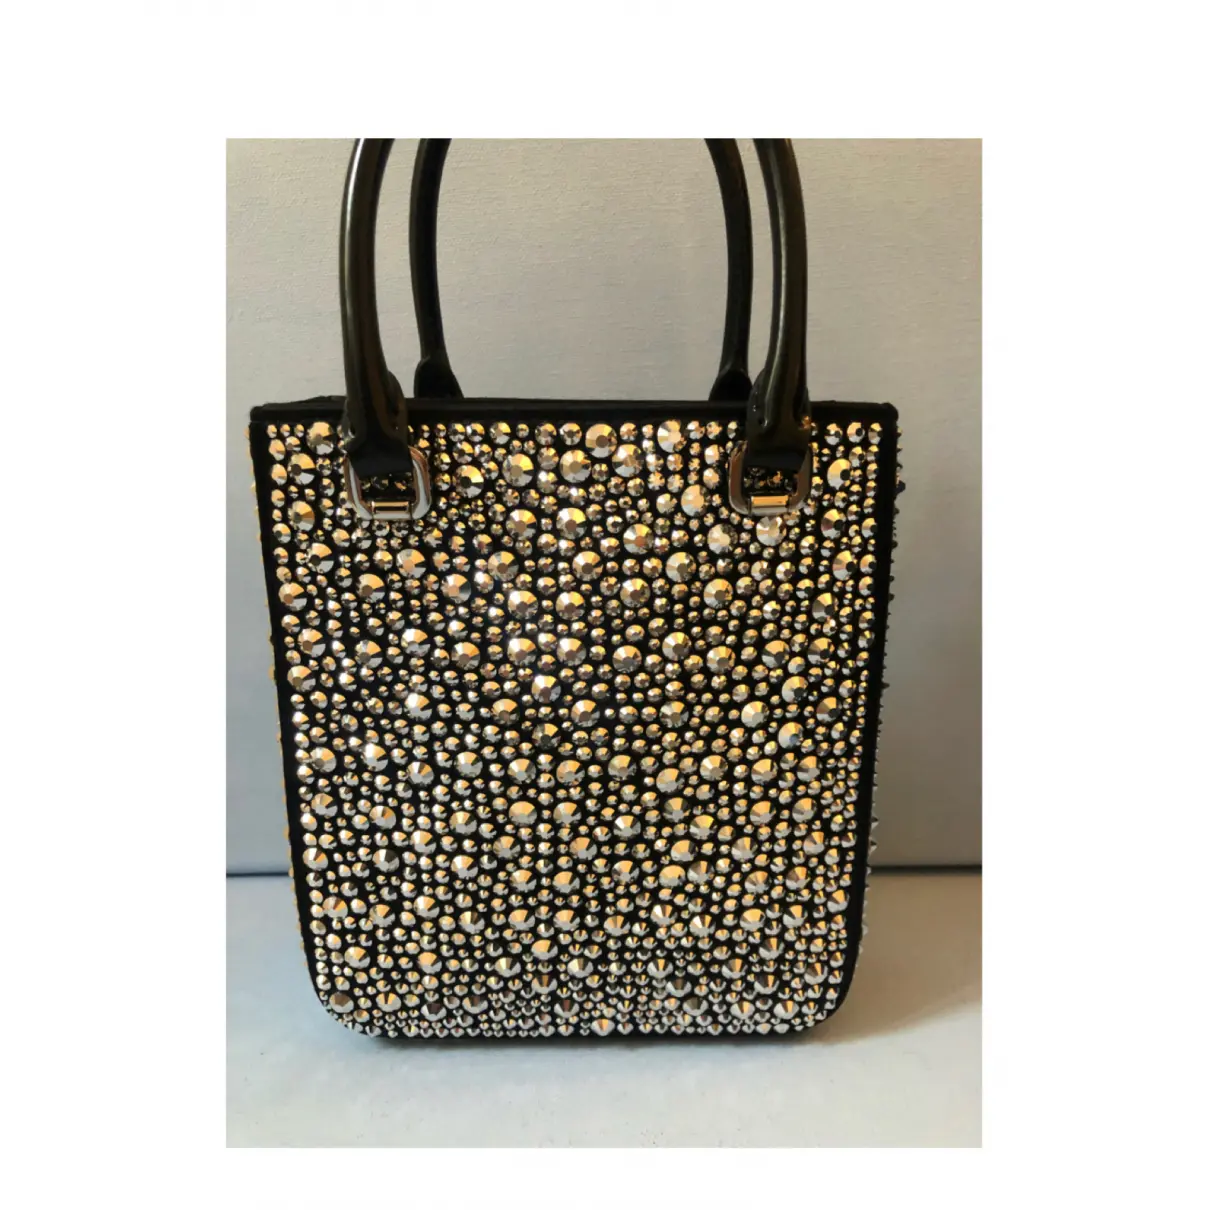 Buy Prada Glitter handbag online